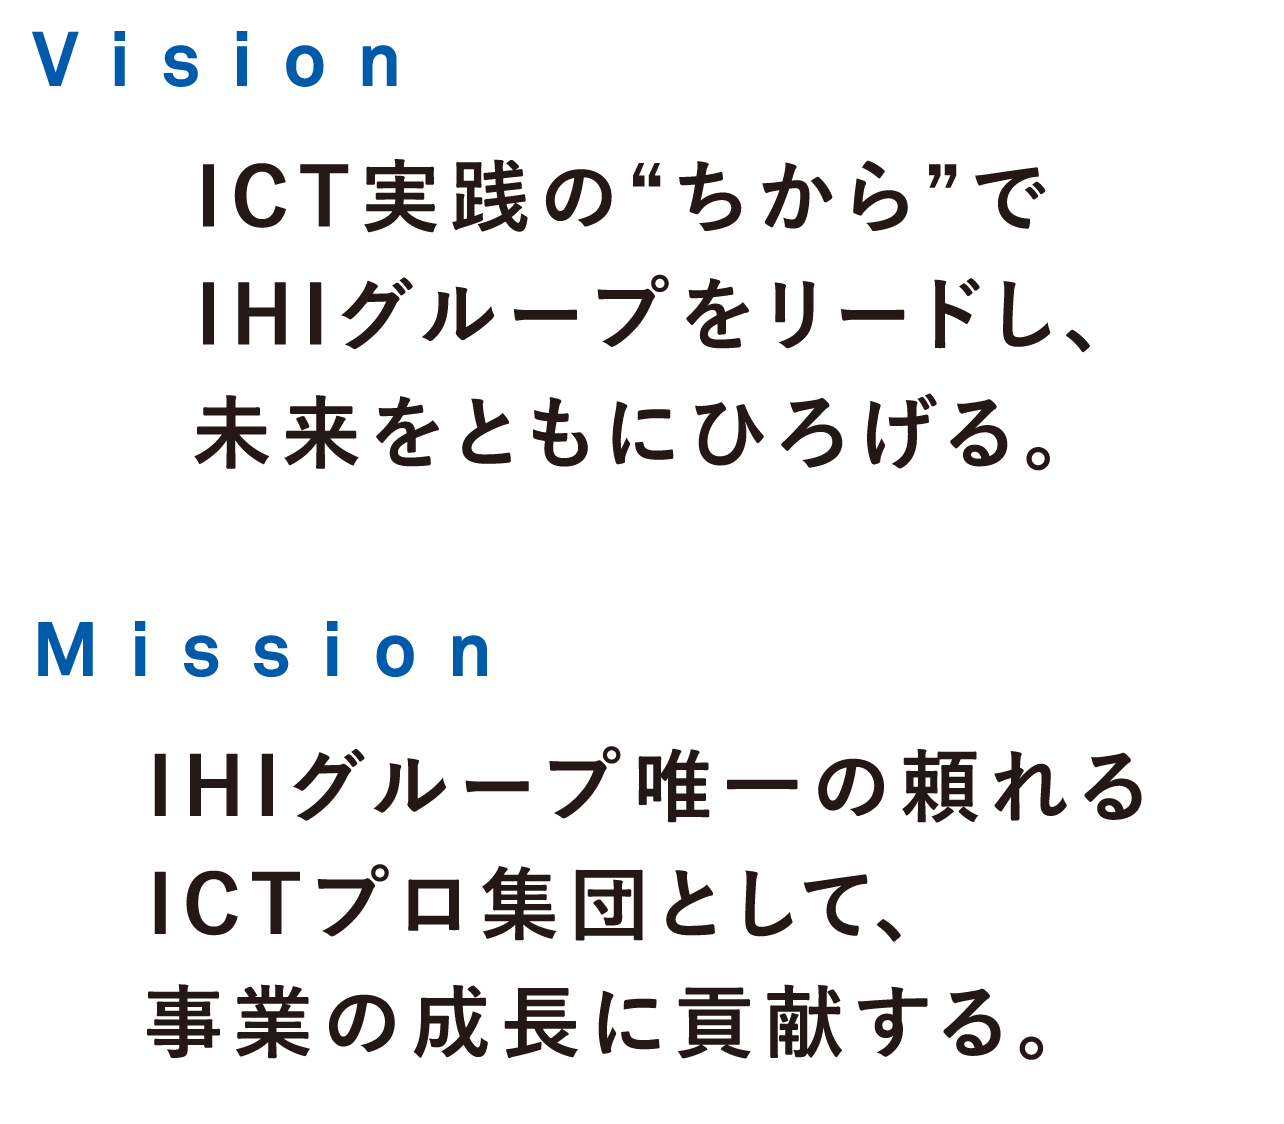 Vision ICT実践の“ちから”でIHIグループをリードし、未来をともにひろげる。Mission IHIグループ唯一の頼れるICTプロ集団として、事業の成長に貢献する。